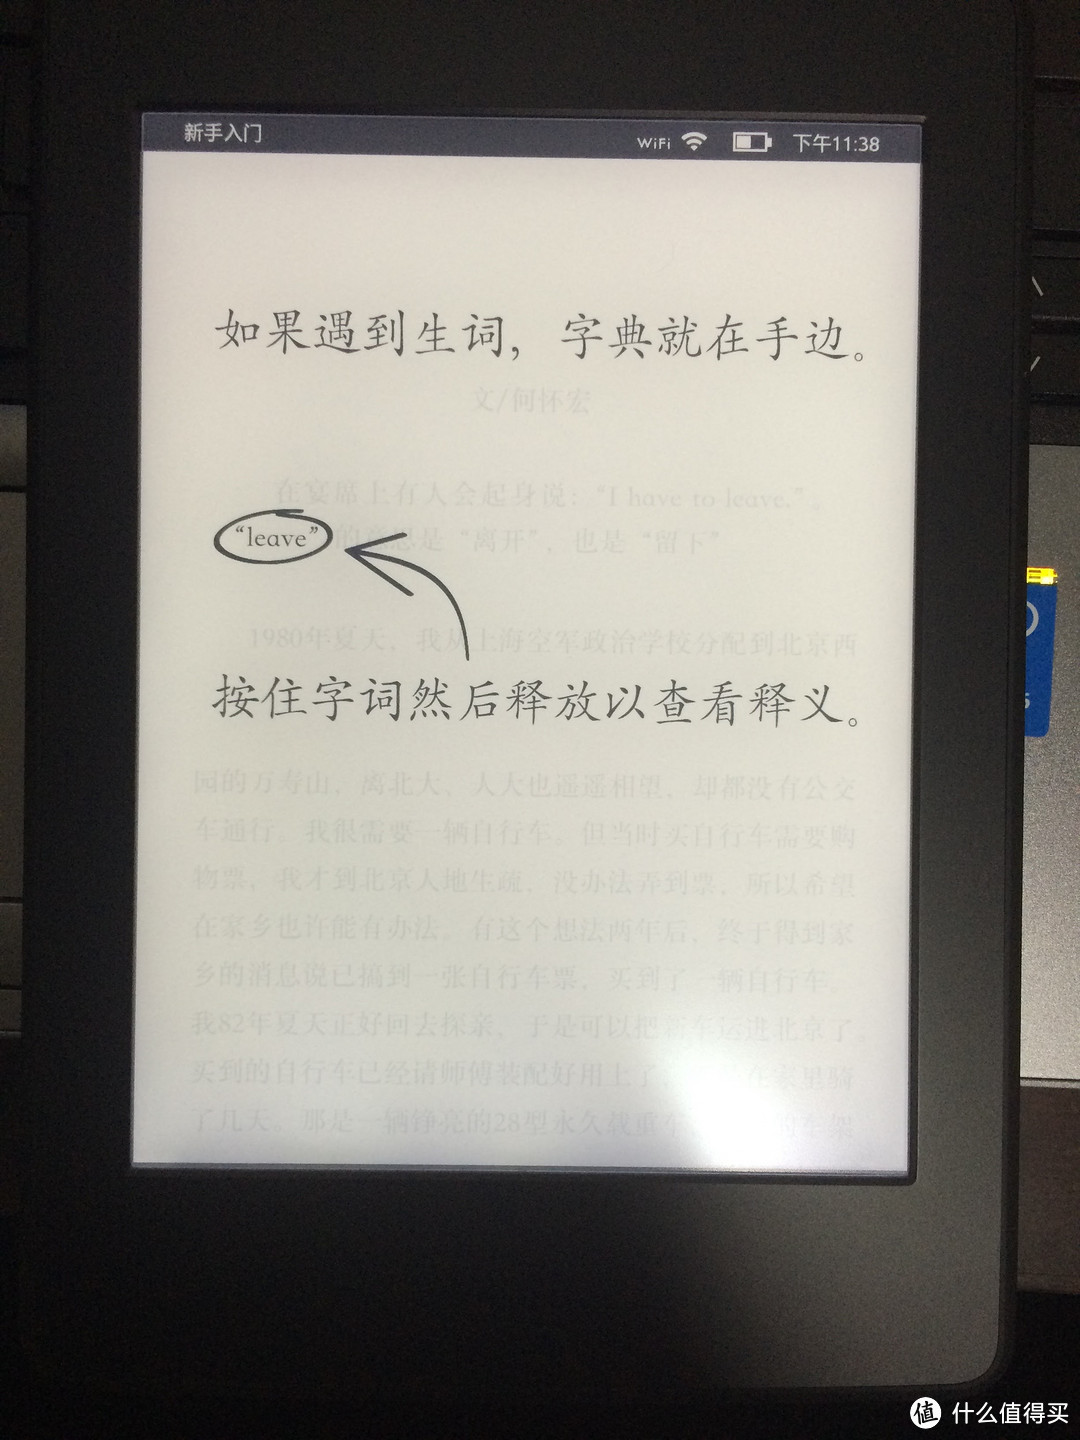 日版 Kindle Paperwhite3 电子书阅读器